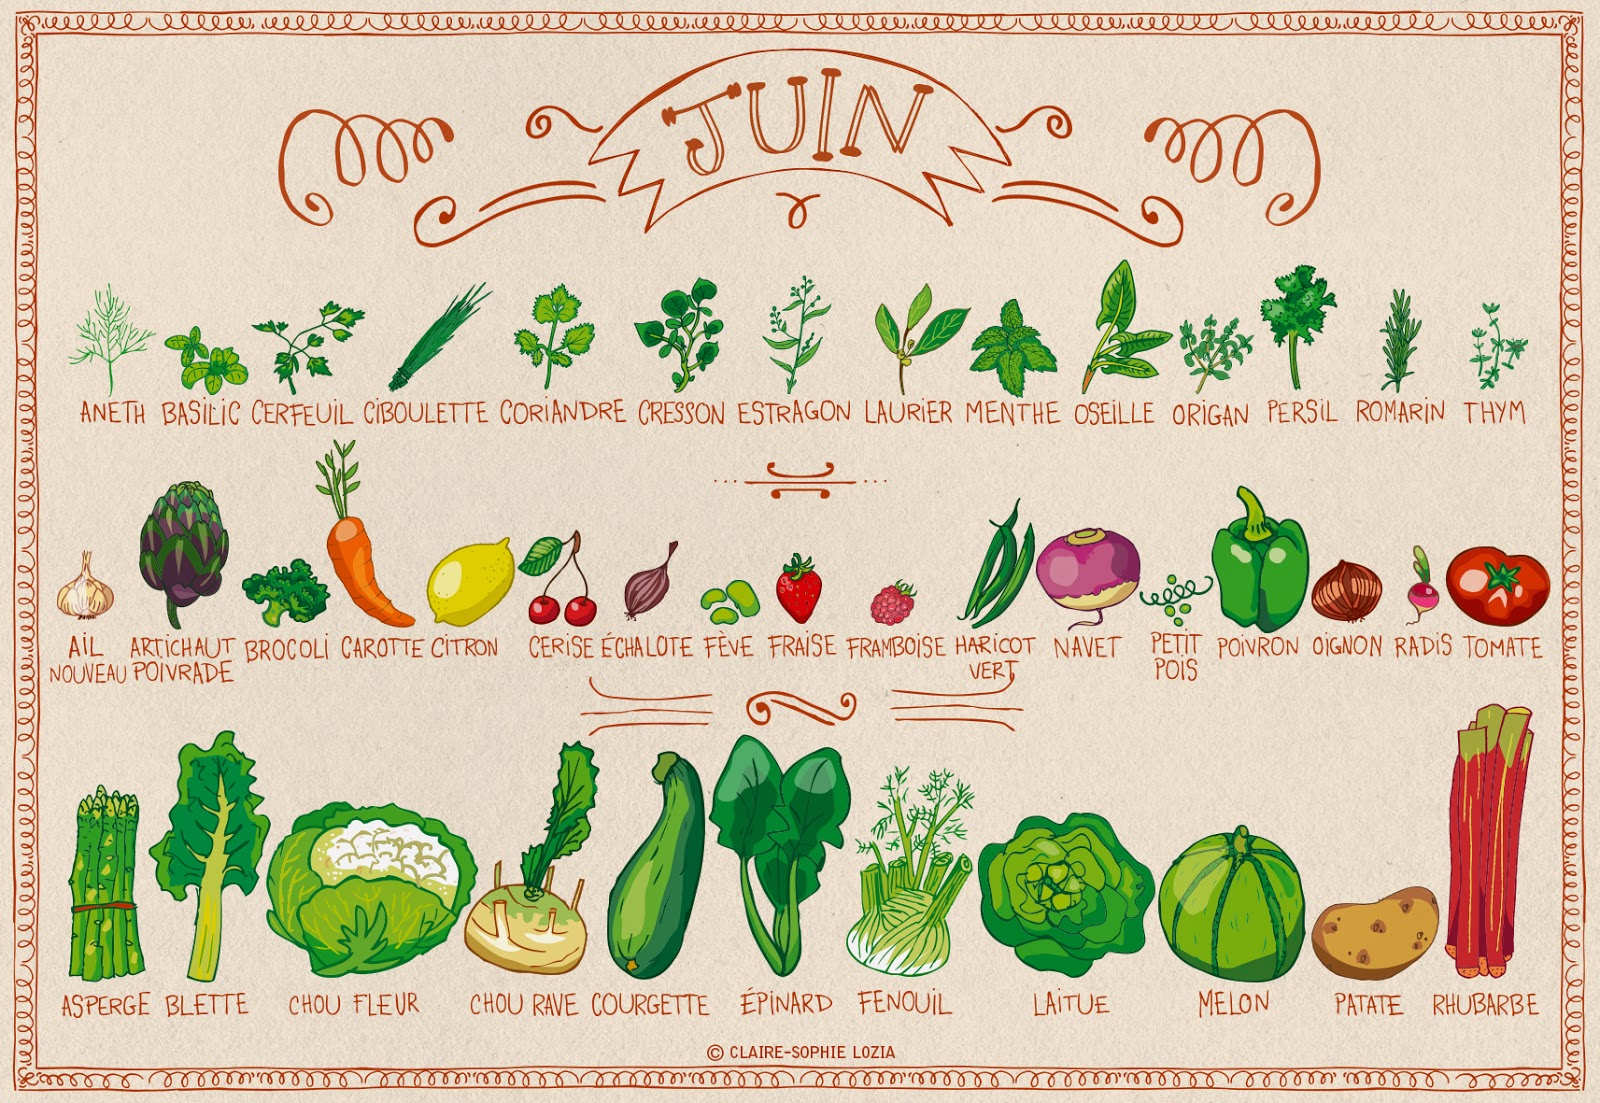 Calendrier fruits et legumes de juin